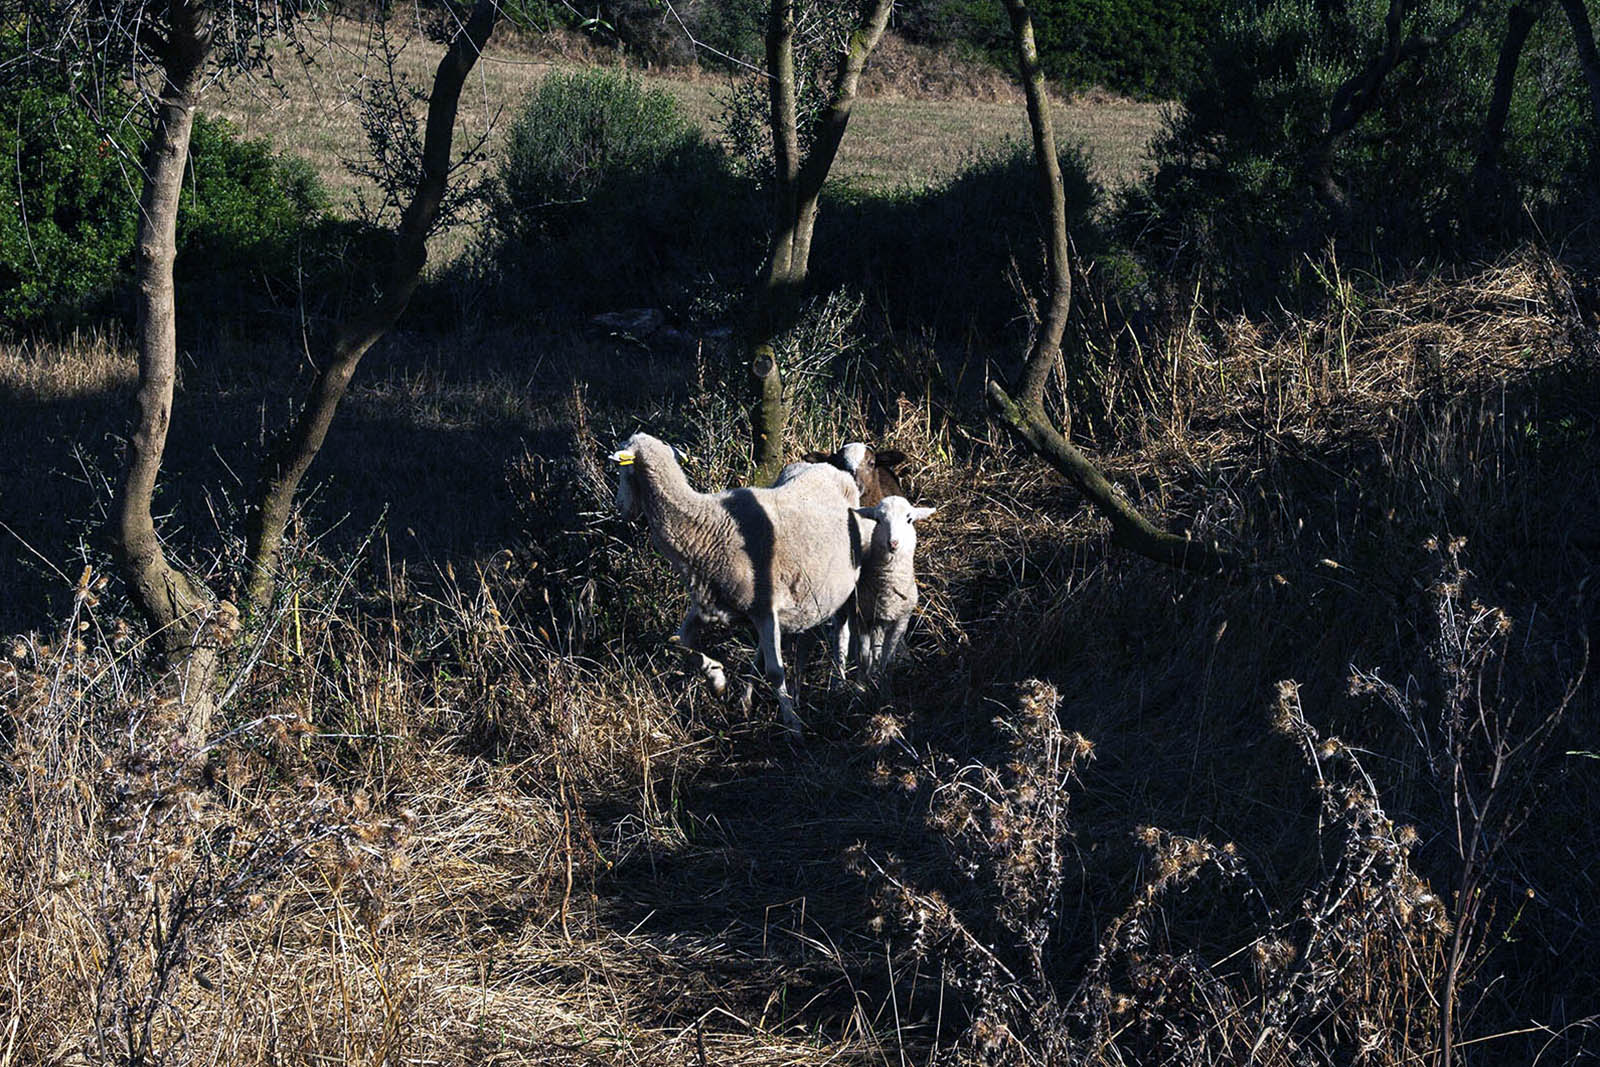 foto3-lugares de aventura-como descubrir los secretos mejor guardados y autenticos de menorca-ovejas-julia-miralles.jpg